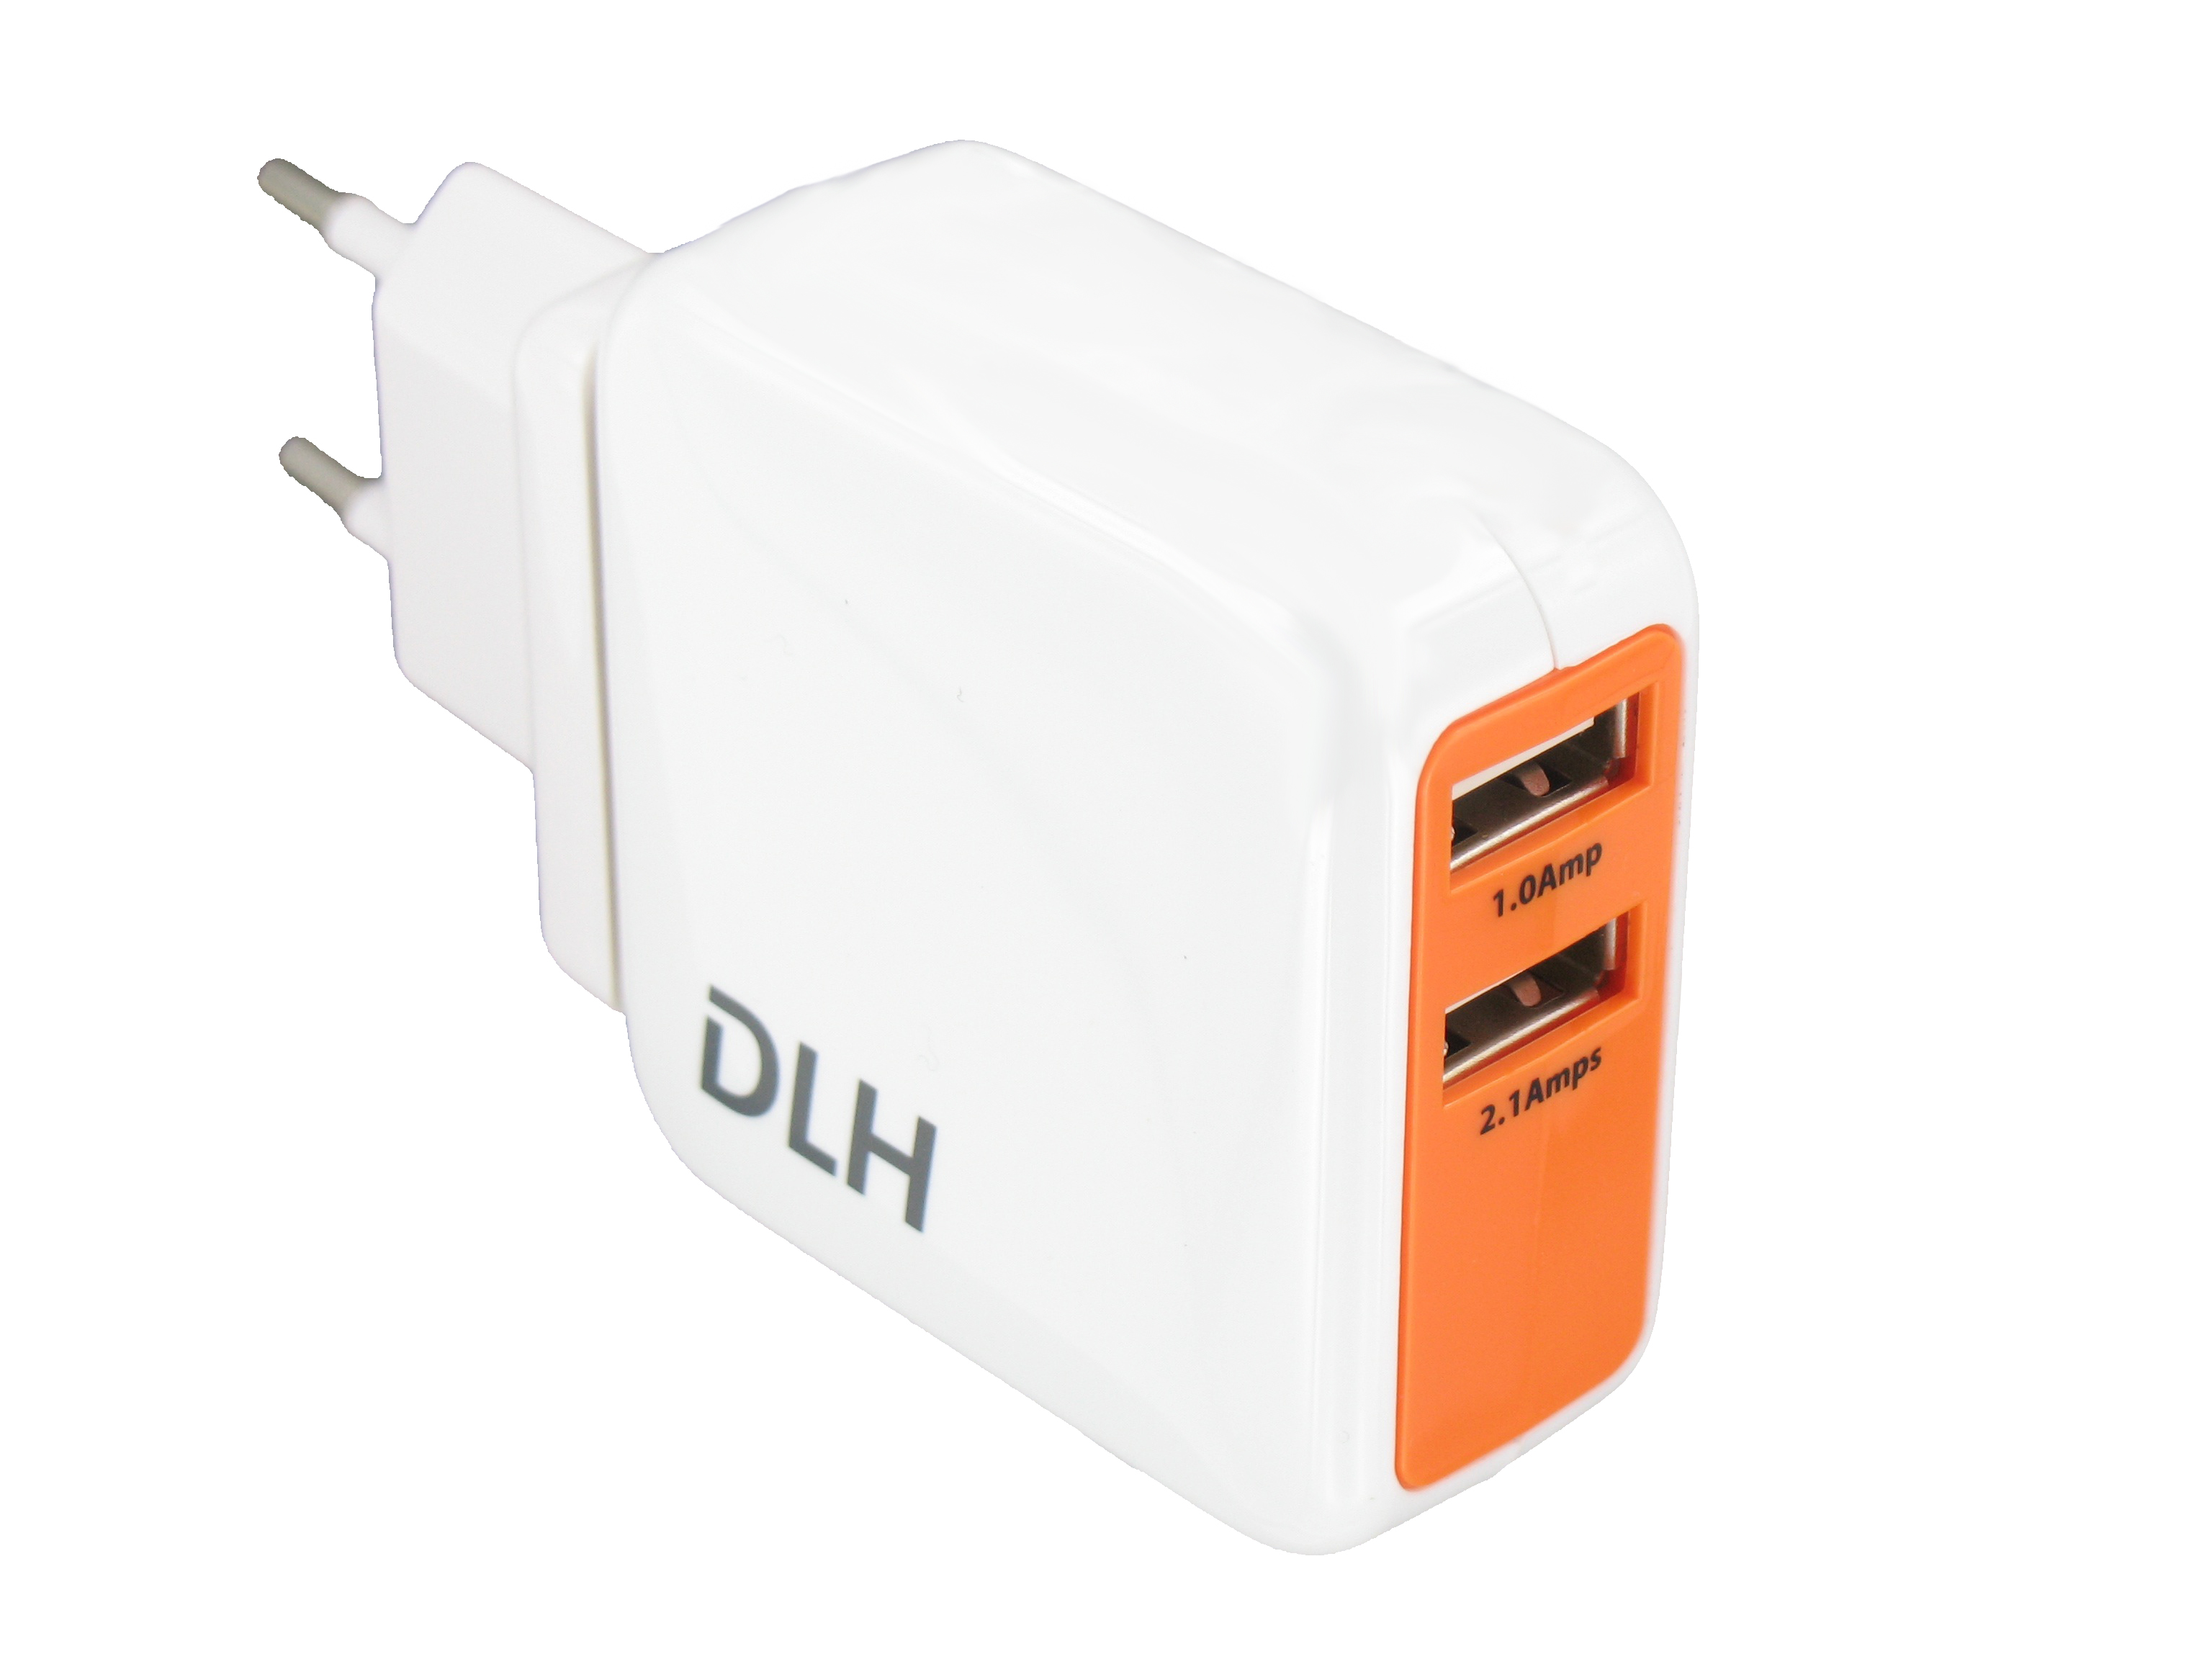 DLH DY-LI1590 Chargeur Allume Cigare pour Appareil USB/Ordinateur